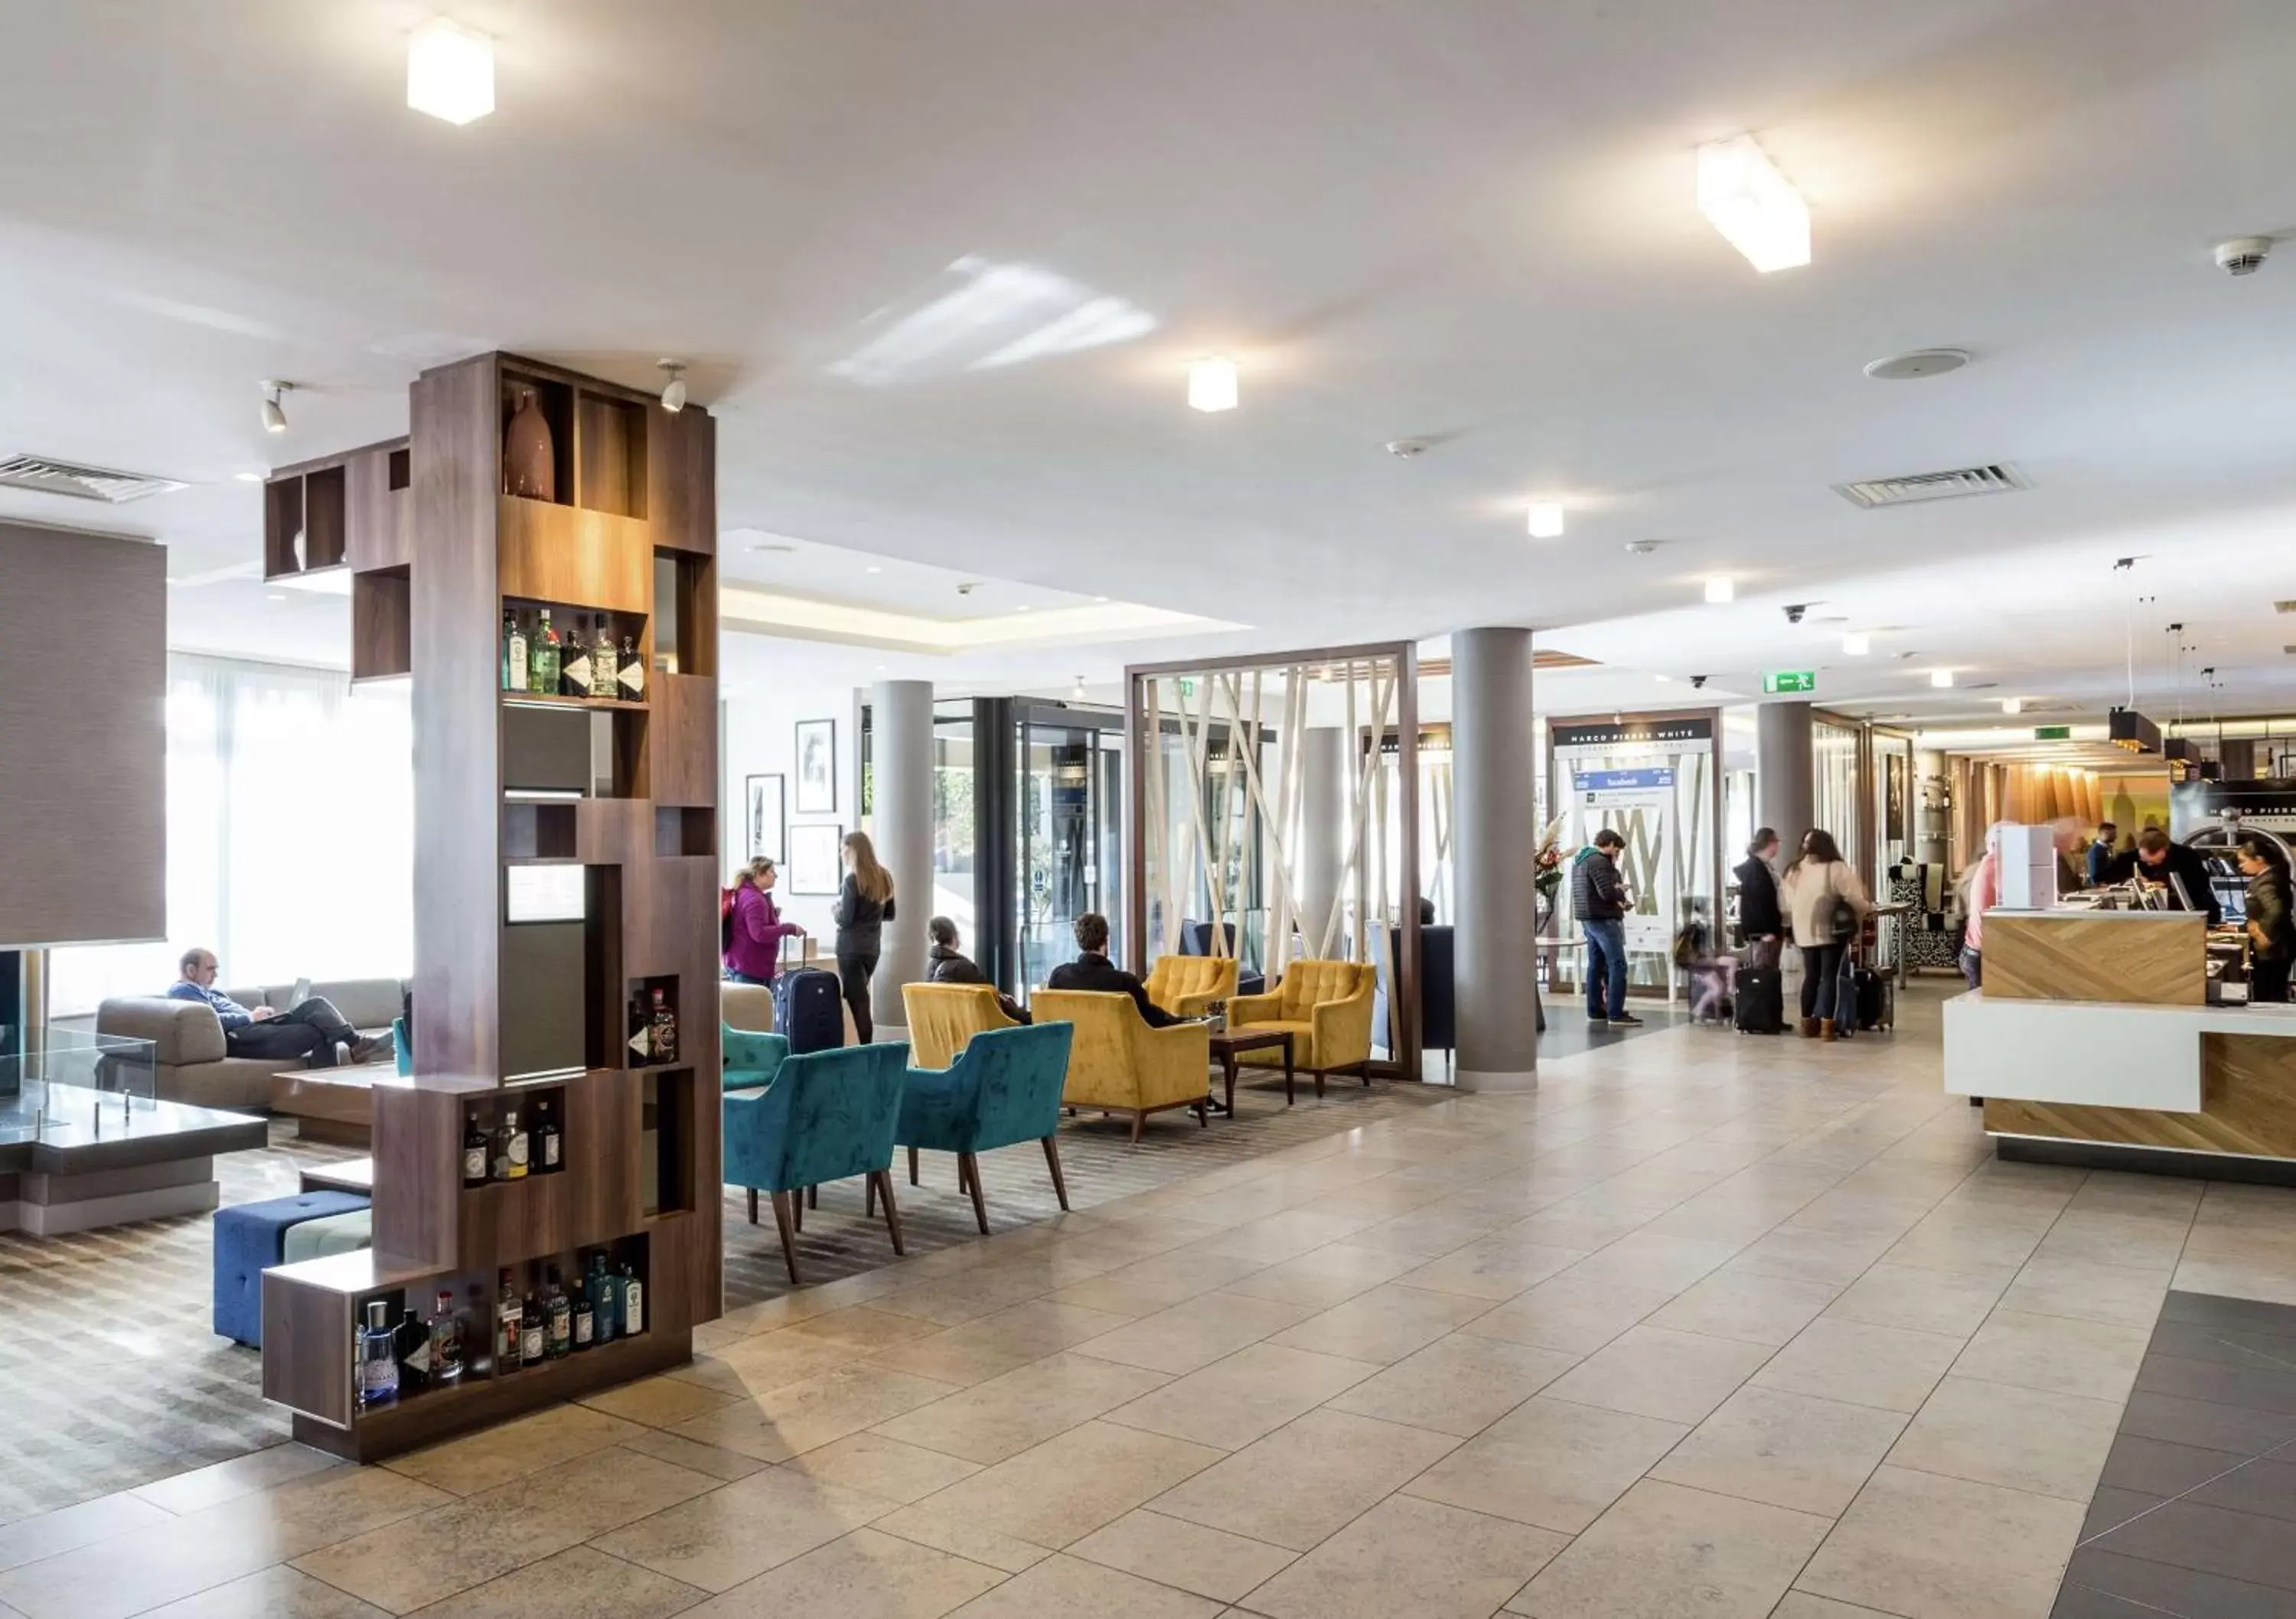 Lobby or reception in DoubleTree by Hilton London Angel Kings Cross